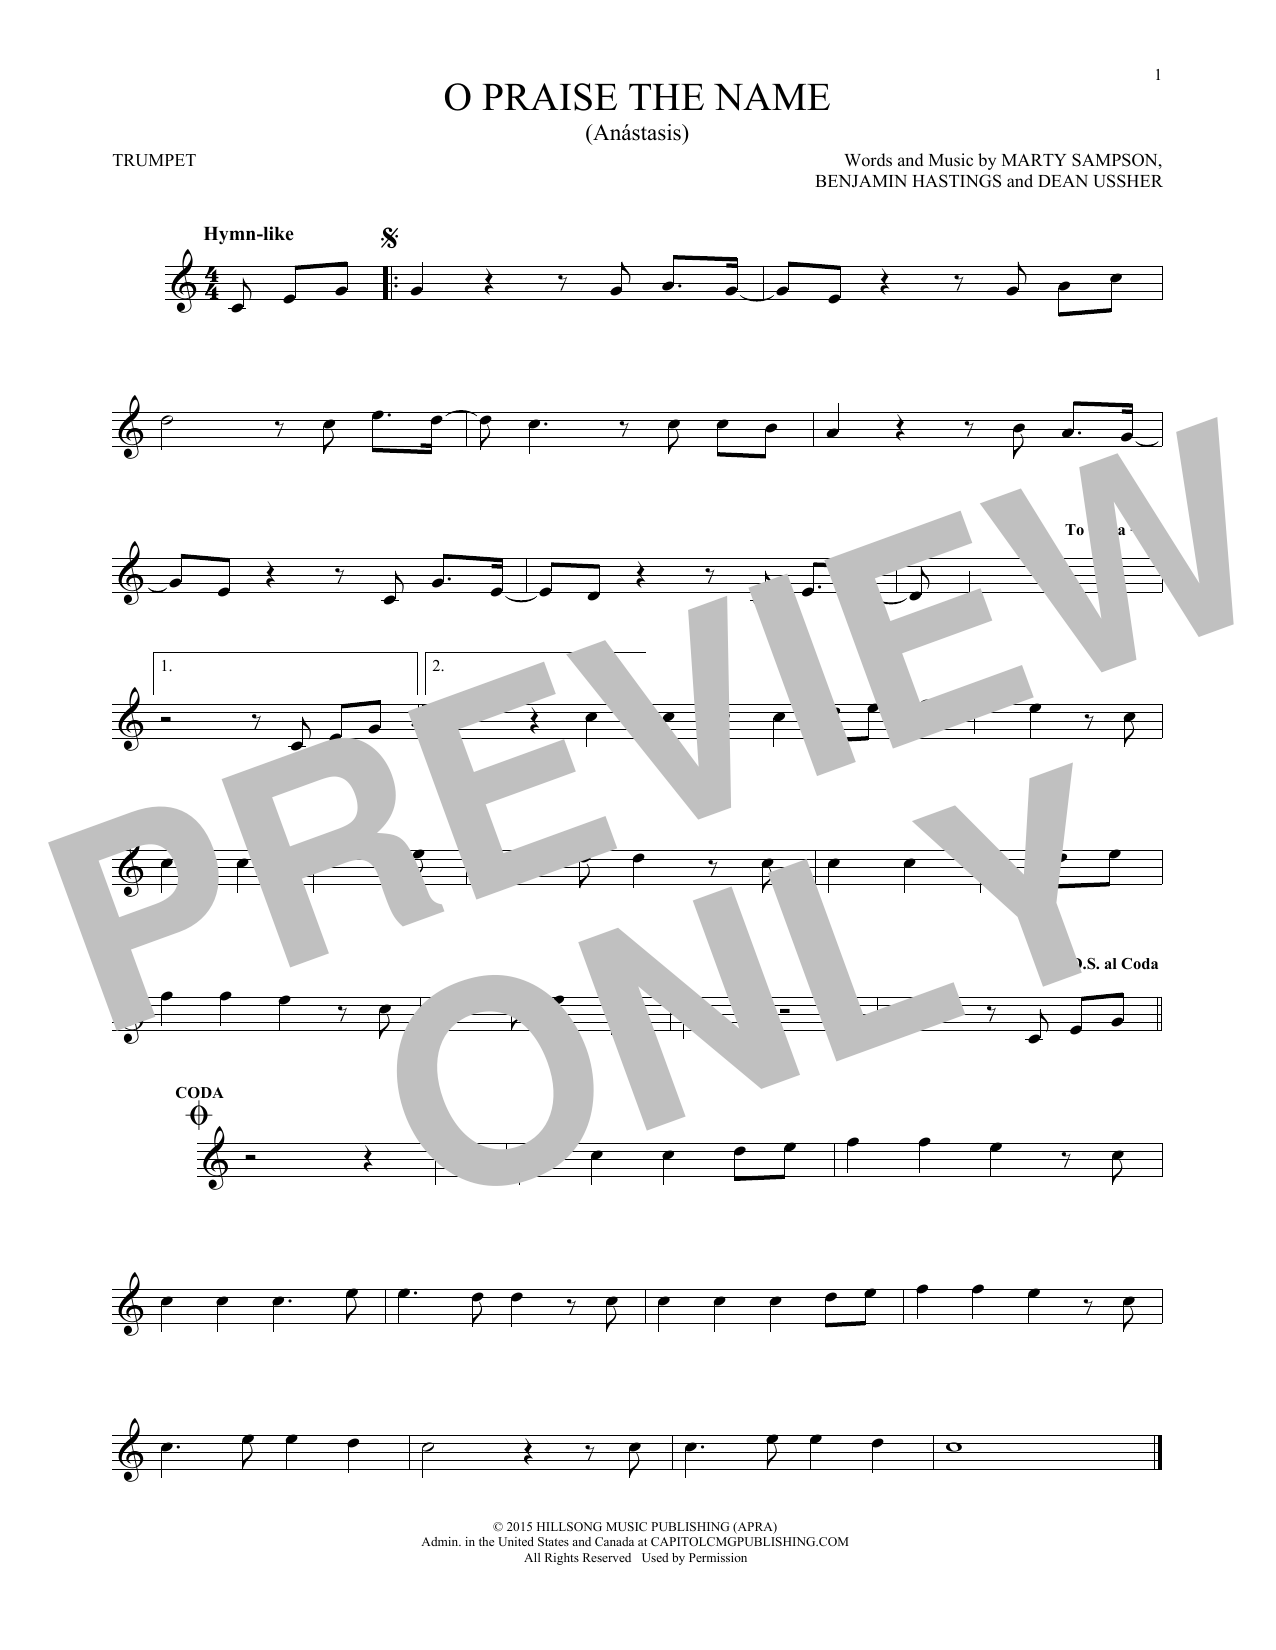 Hillsong Worship O Praise The Name (Anastasis) Sheet Music Notes & Chords for Ukulele - Download or Print PDF